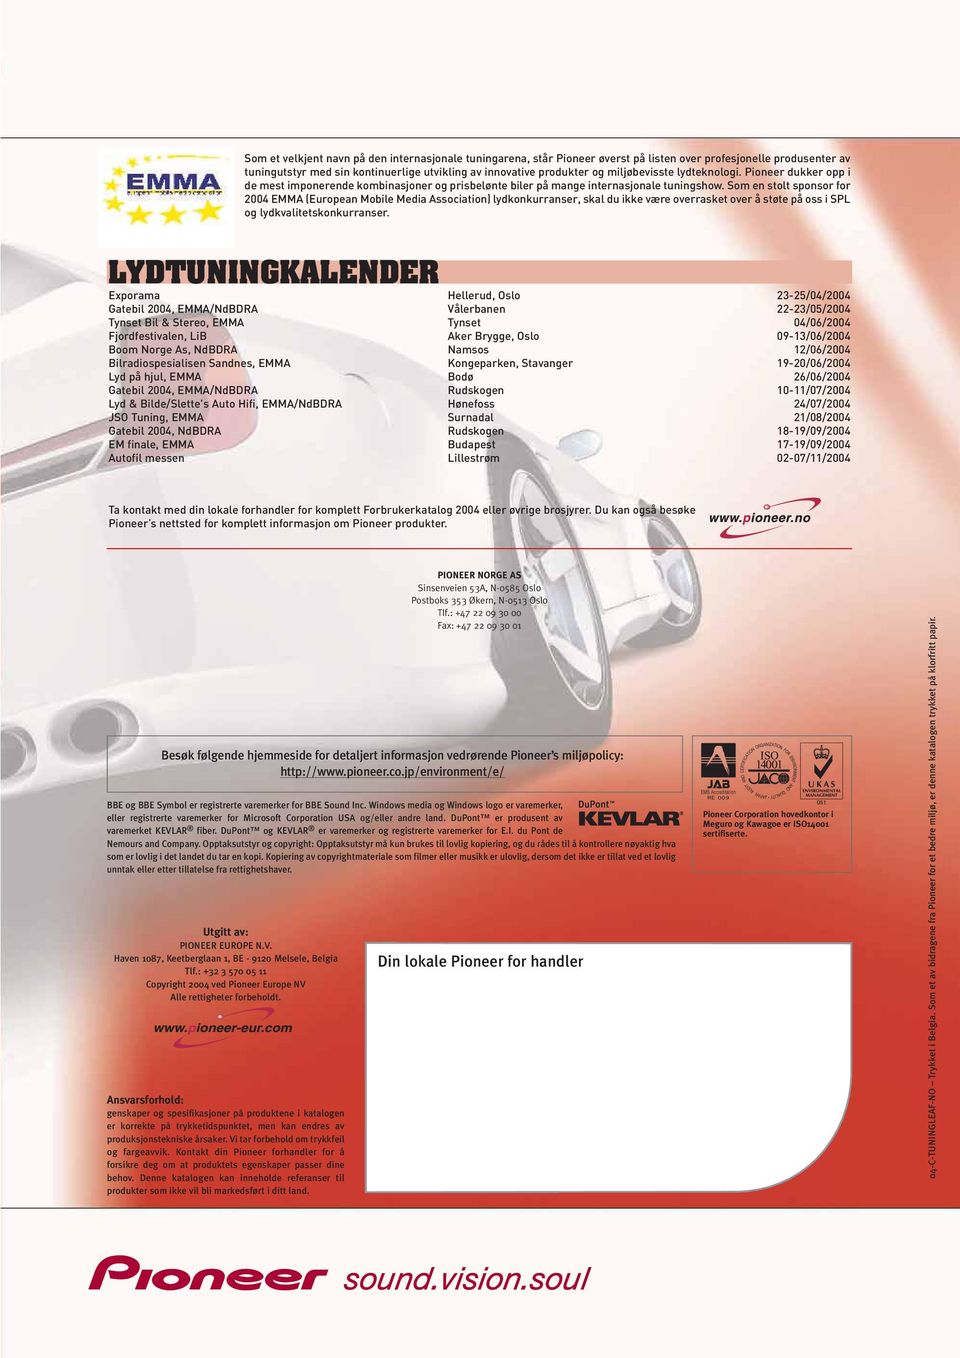 Som en stolt sponsor for 2004 EMMA (European Mobile Media Association) lydkonkurranser, skal du ikke være overrasket over å støte på oss i SPL og lydkvalitetskonkurranser.